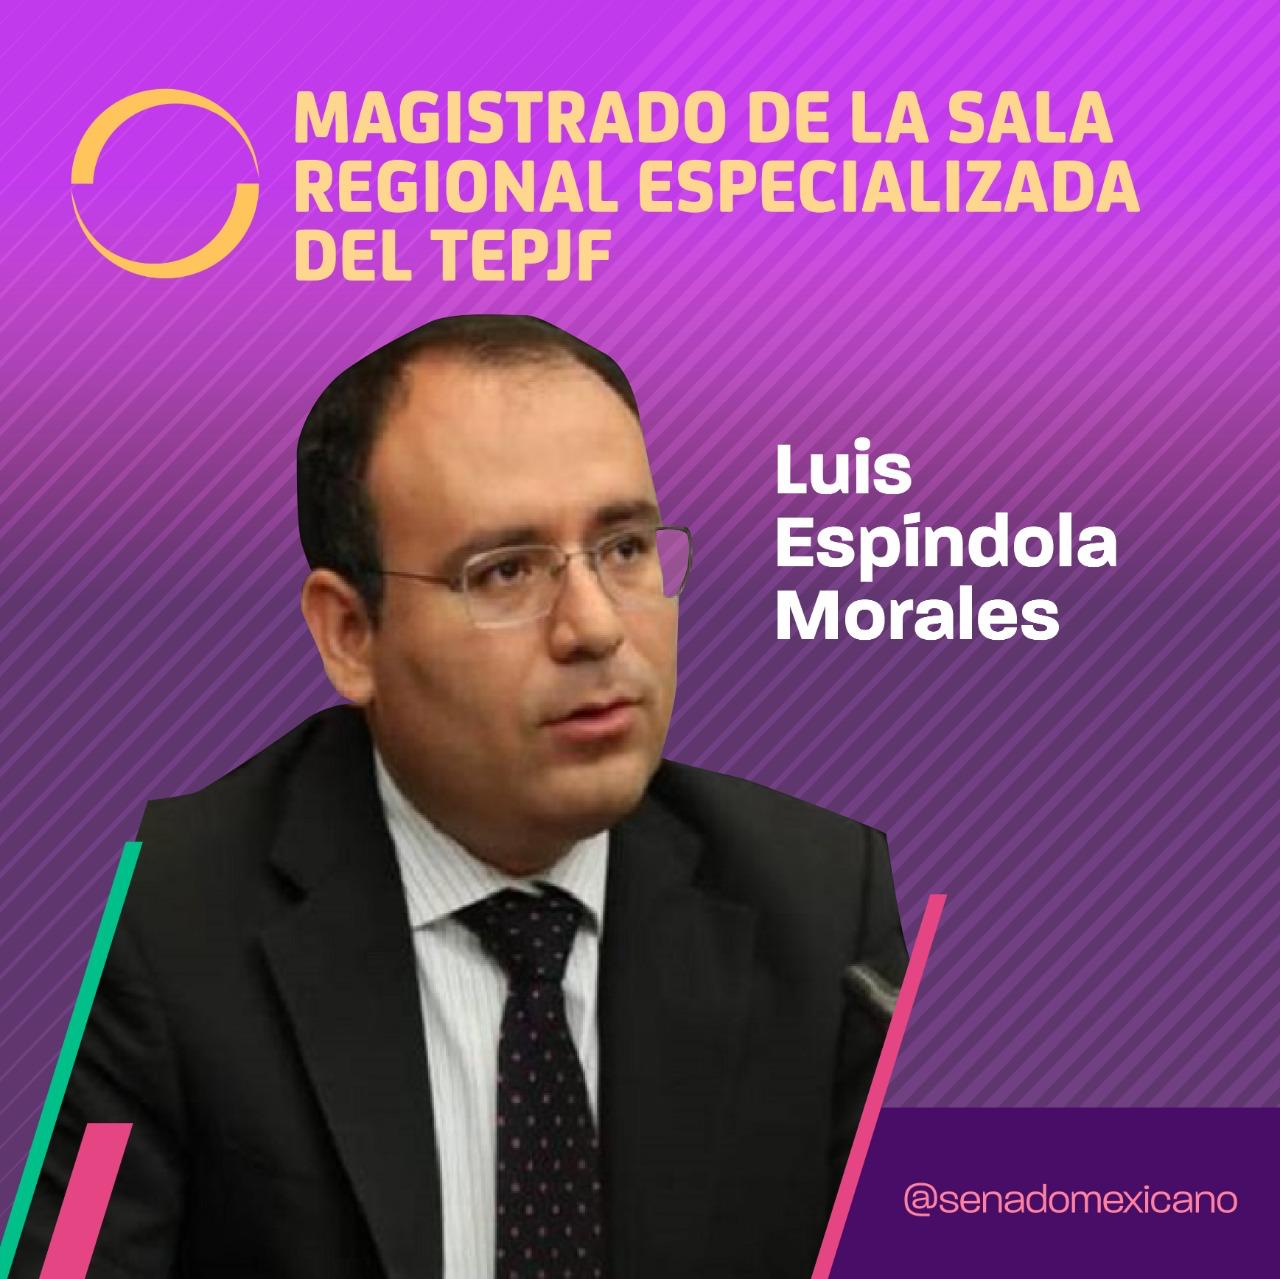 Luis Espinosa Morales, Magistrado de la Sala Regional Especializada de